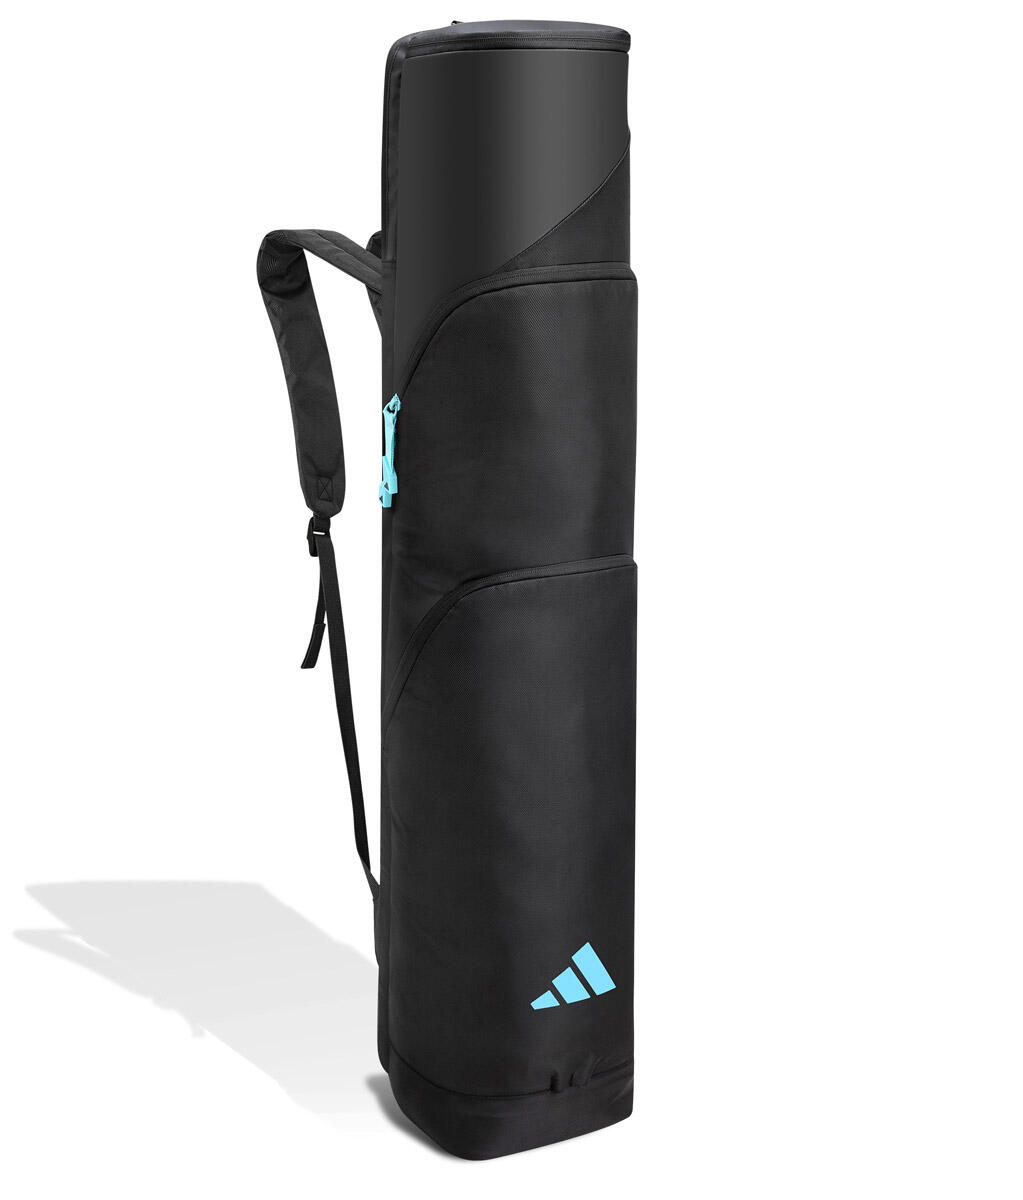 Adidas VS .6 Hockey Stick Bag - Black/Aqua 1/3